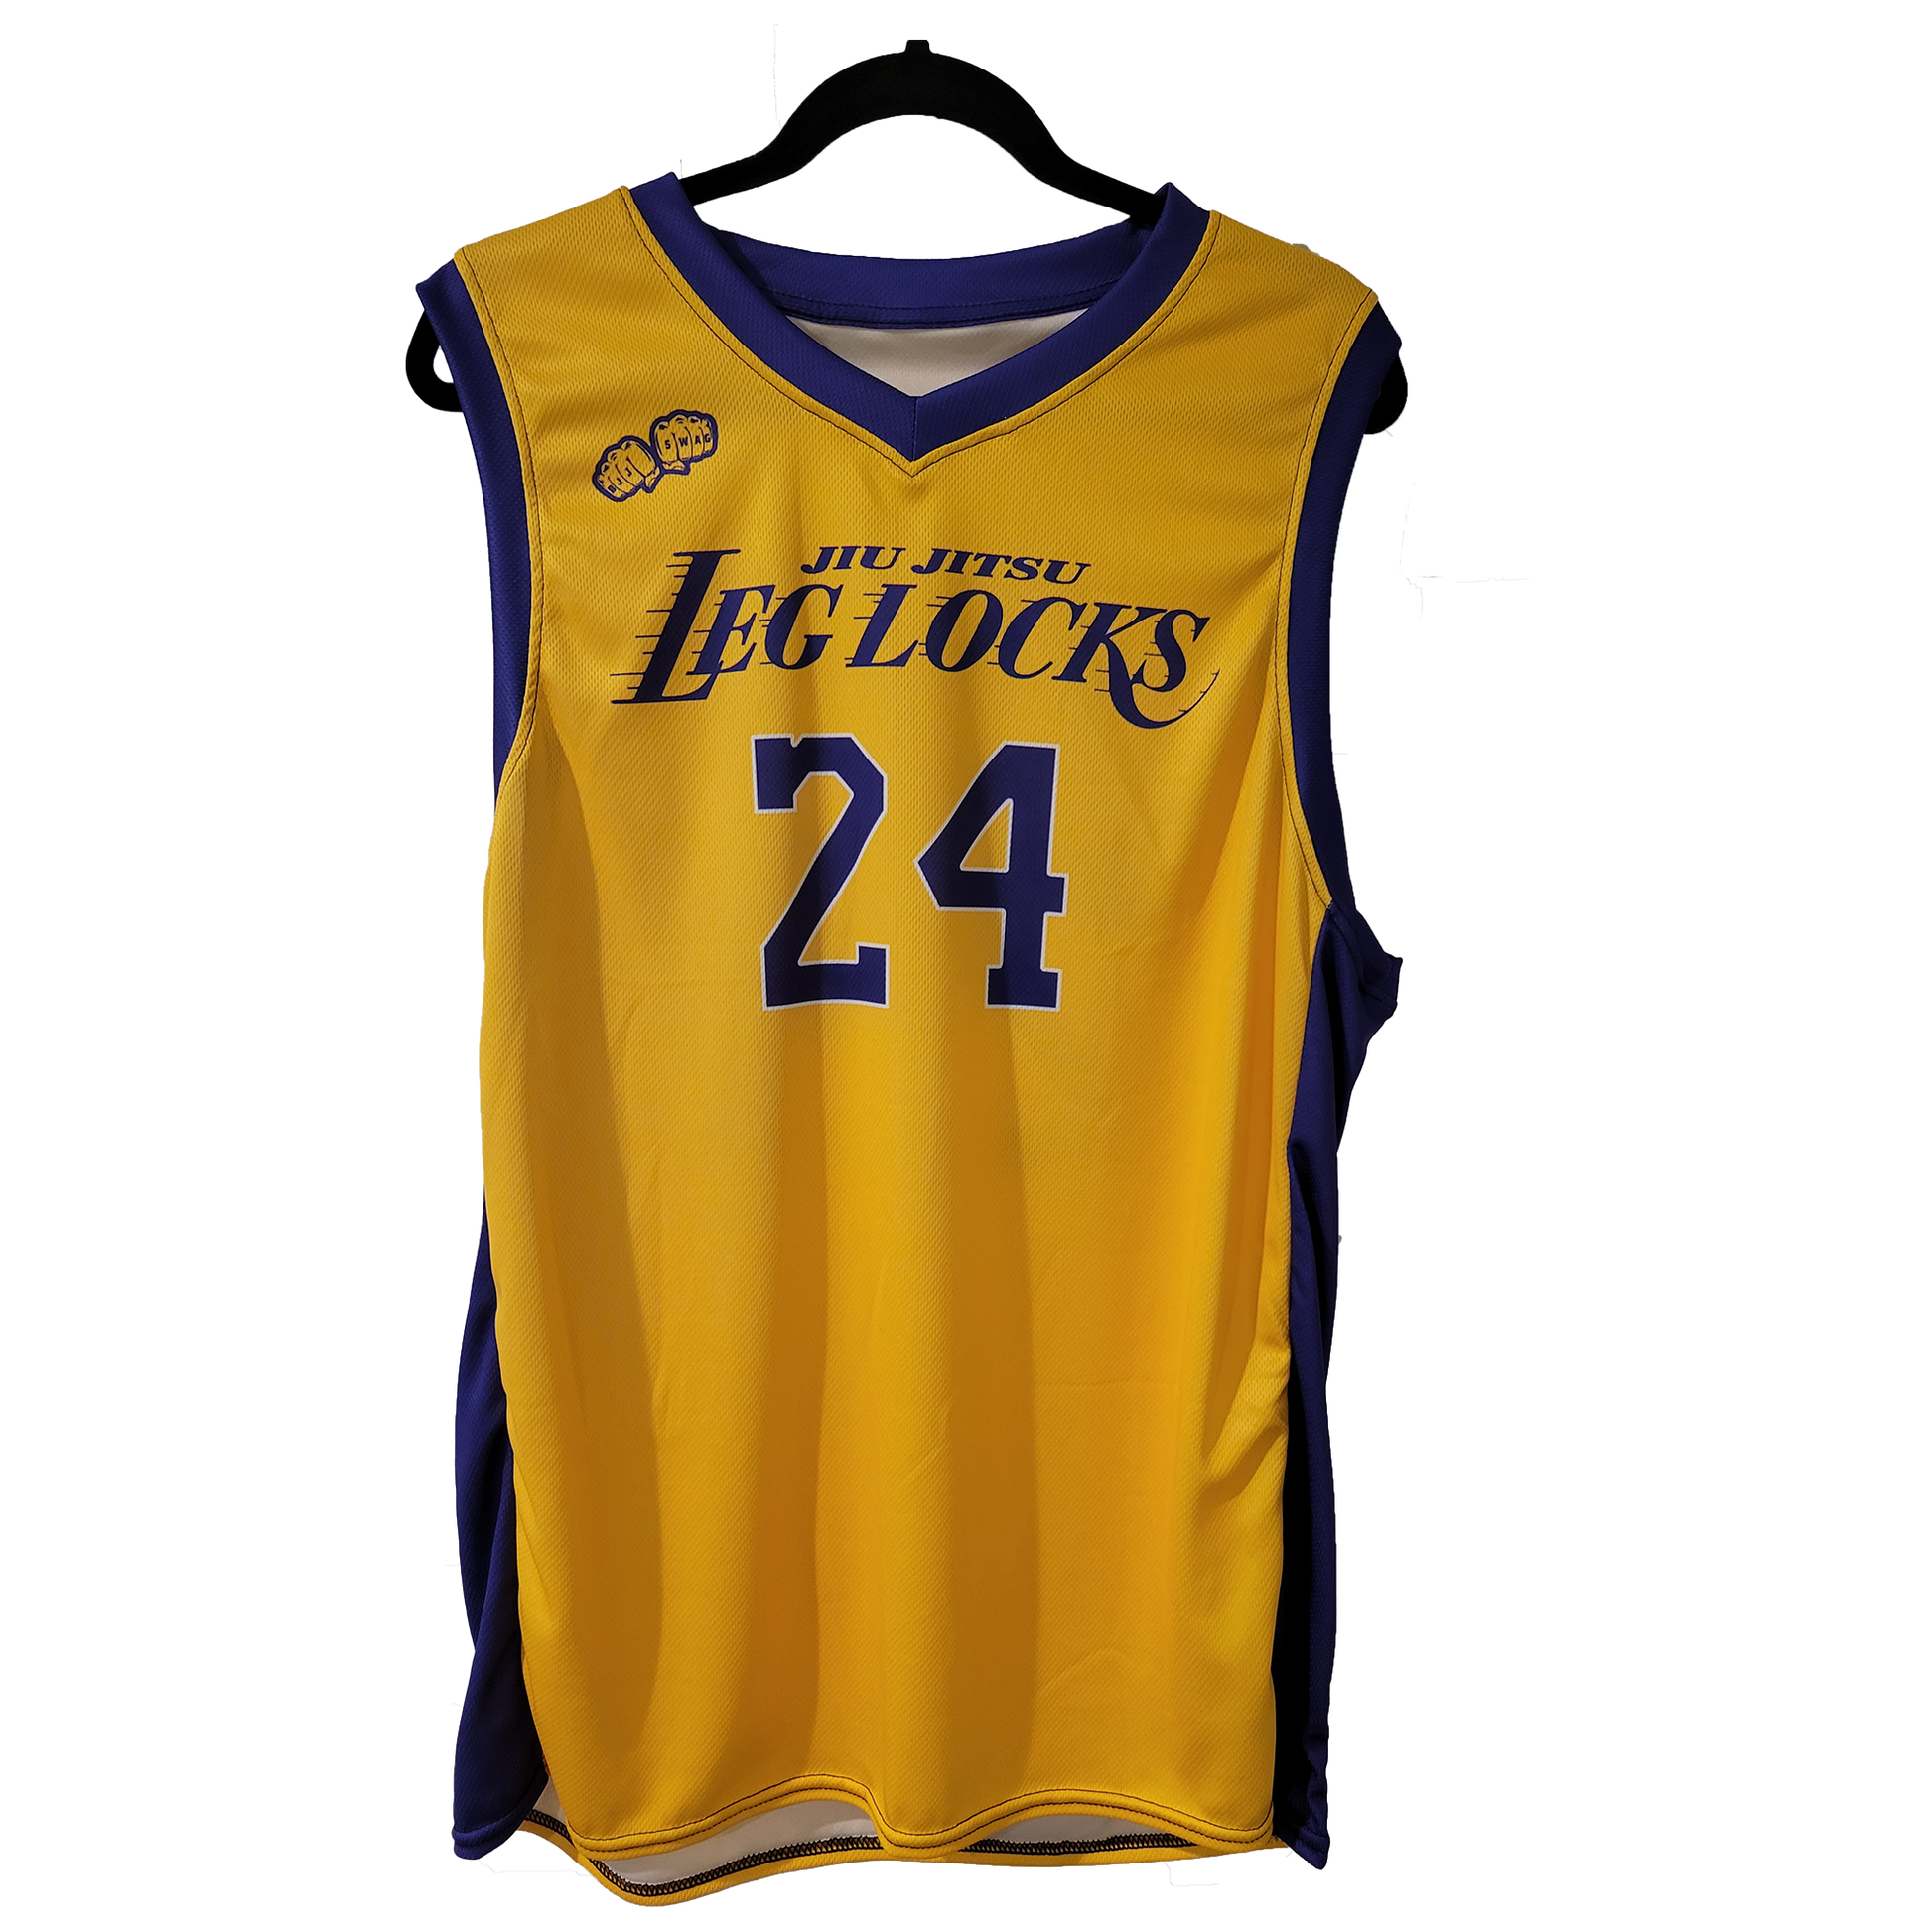 lkf9 Basketball Jersey purple – LKF9